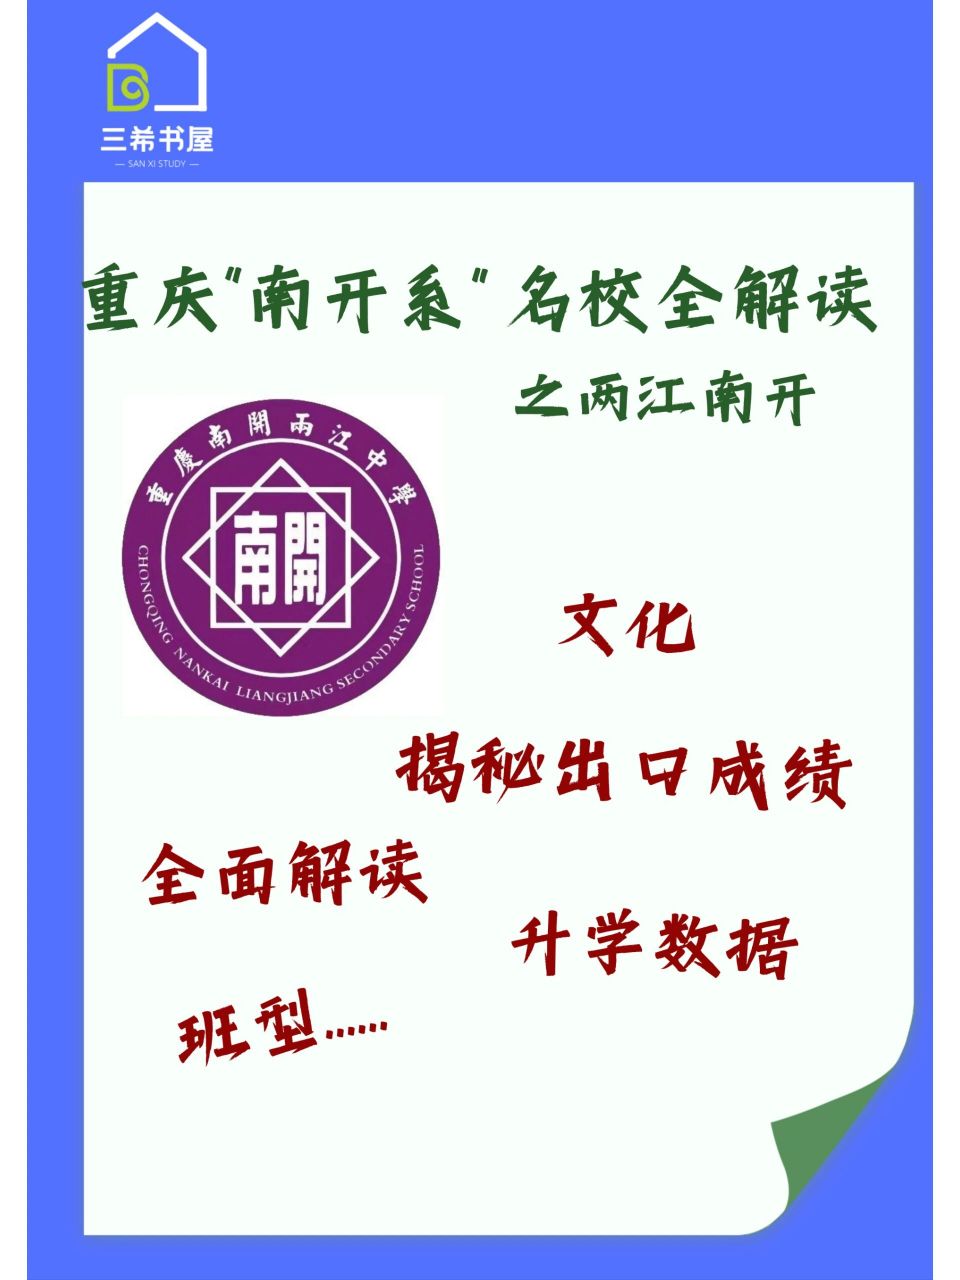 重庆南开两江中学校徽图片